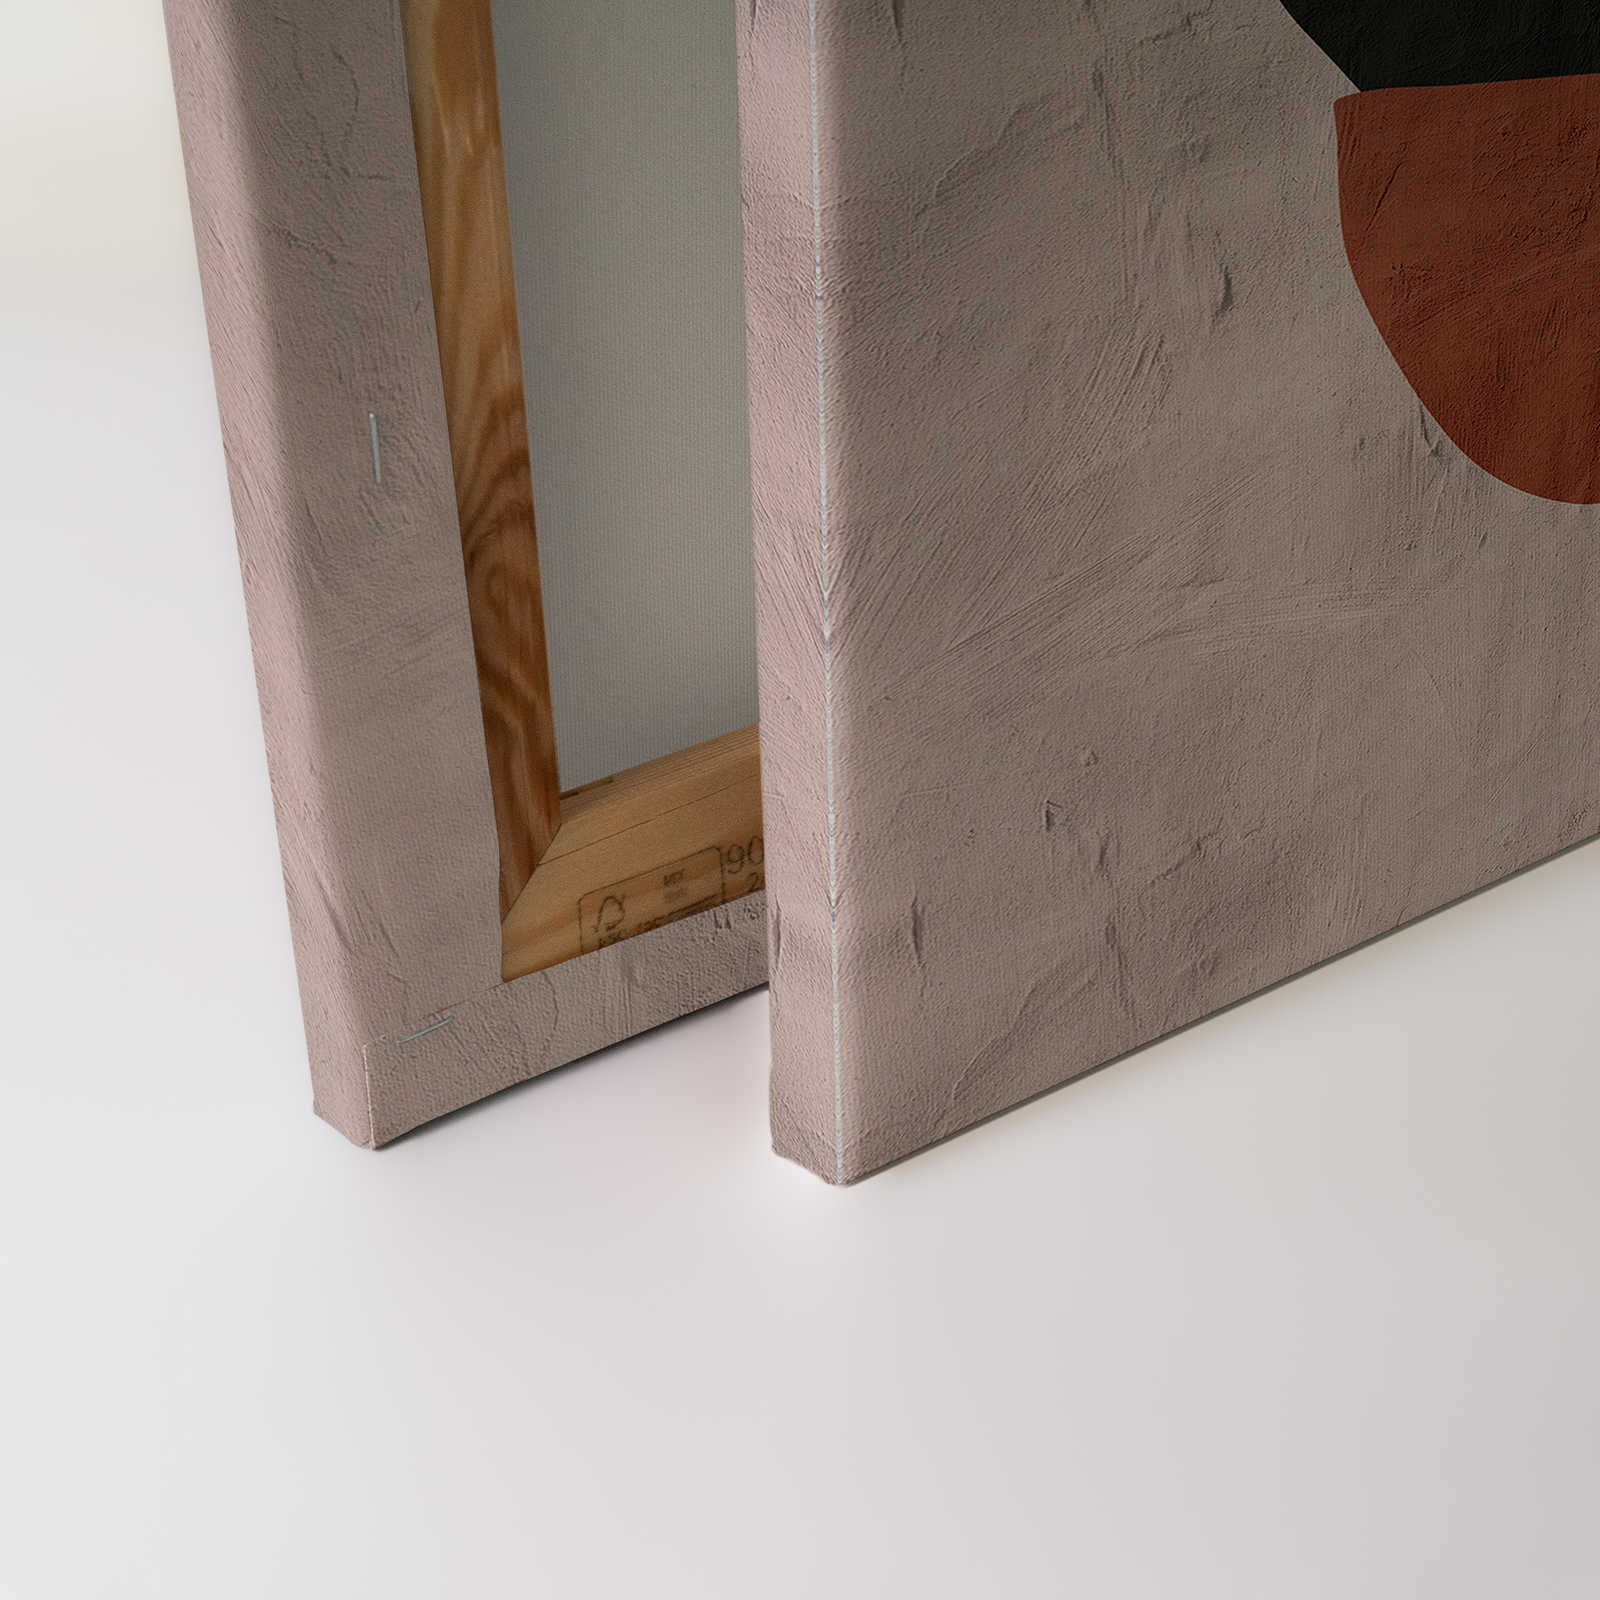             Santa Fe 1 - Tableau d'argile beige avec design ethnique - 1,20 m x 0,80 m
        